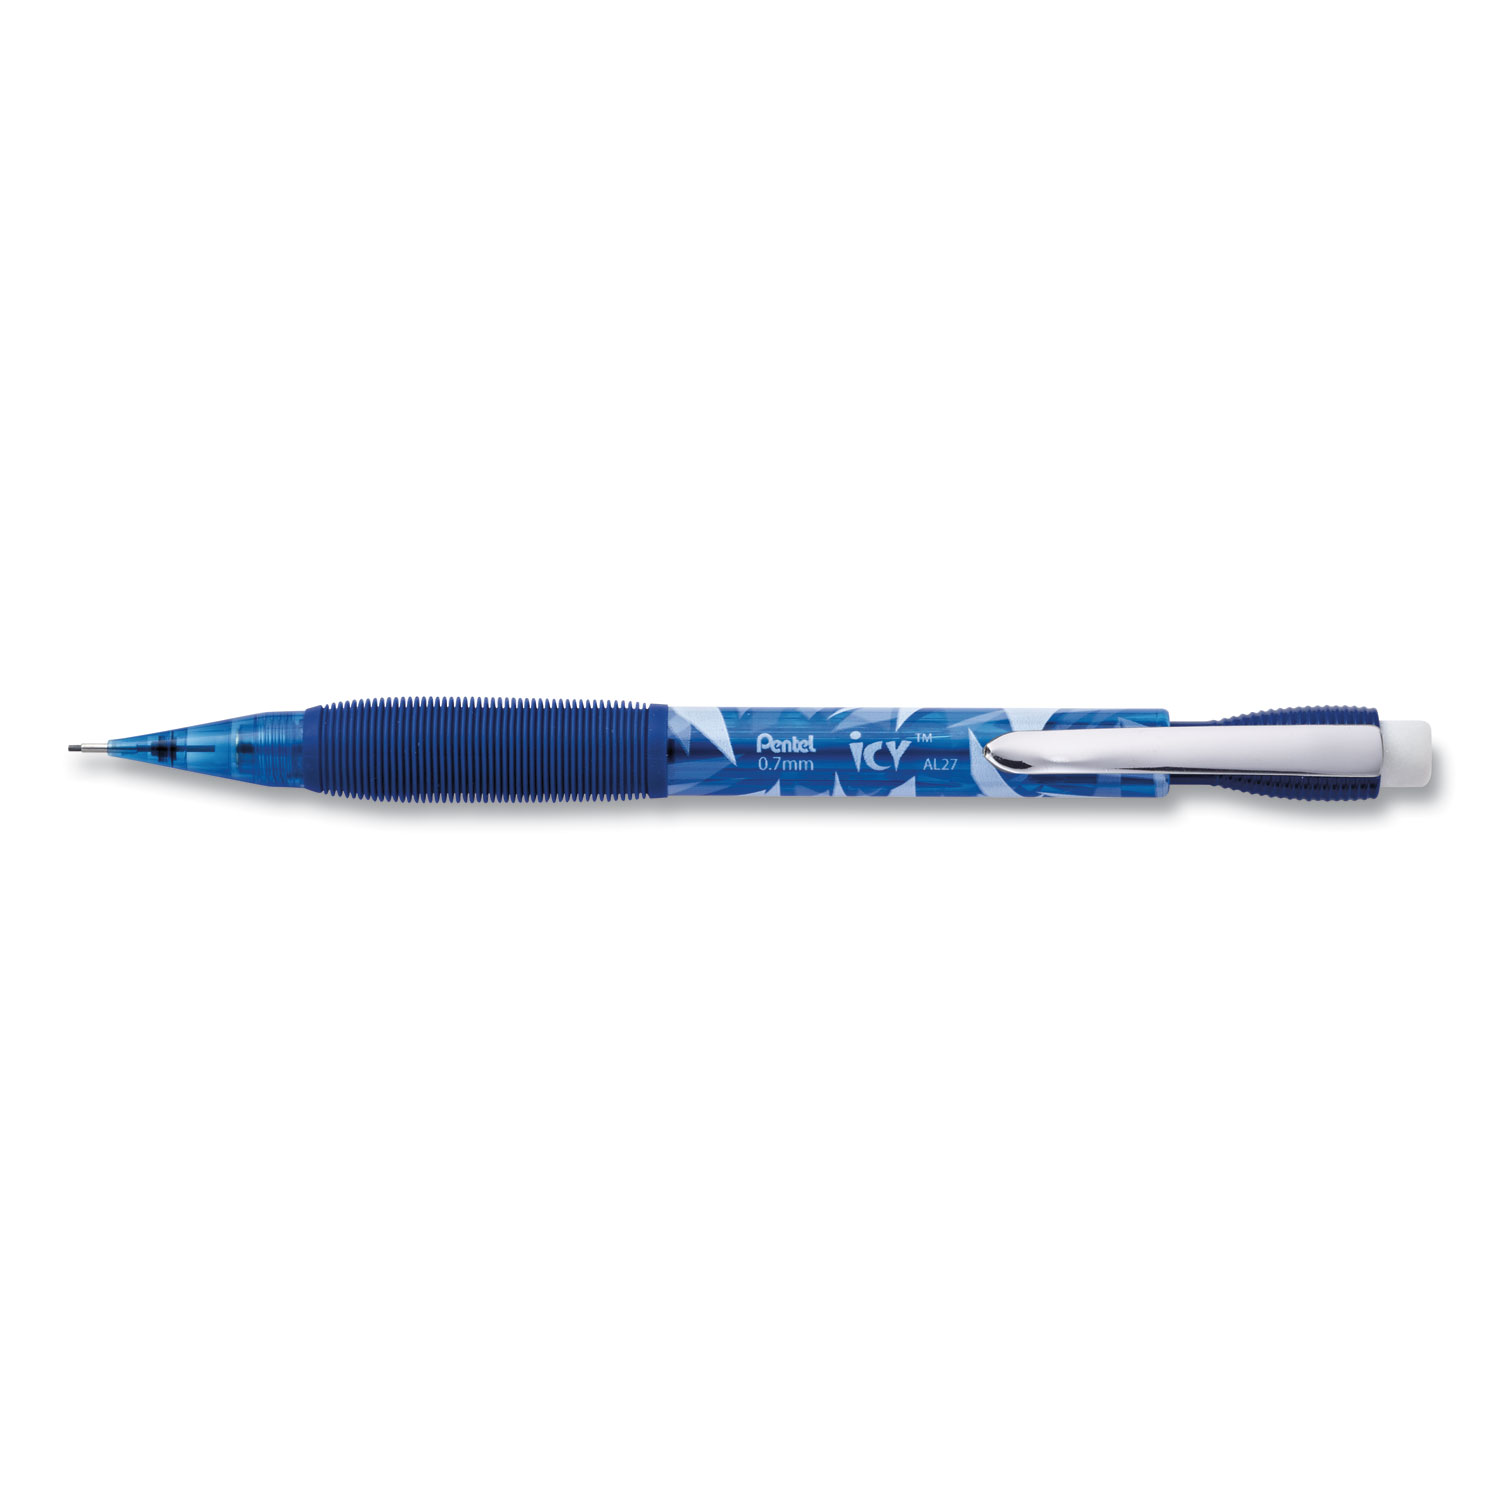  Pentel AL27TCSW-SPR Icy Mechanical Pencil, 0.7 mm, HB (#2.5), Black Lead, Transparent Blue Barrel, 24/Pack (PENAL27TCSWSPR) 